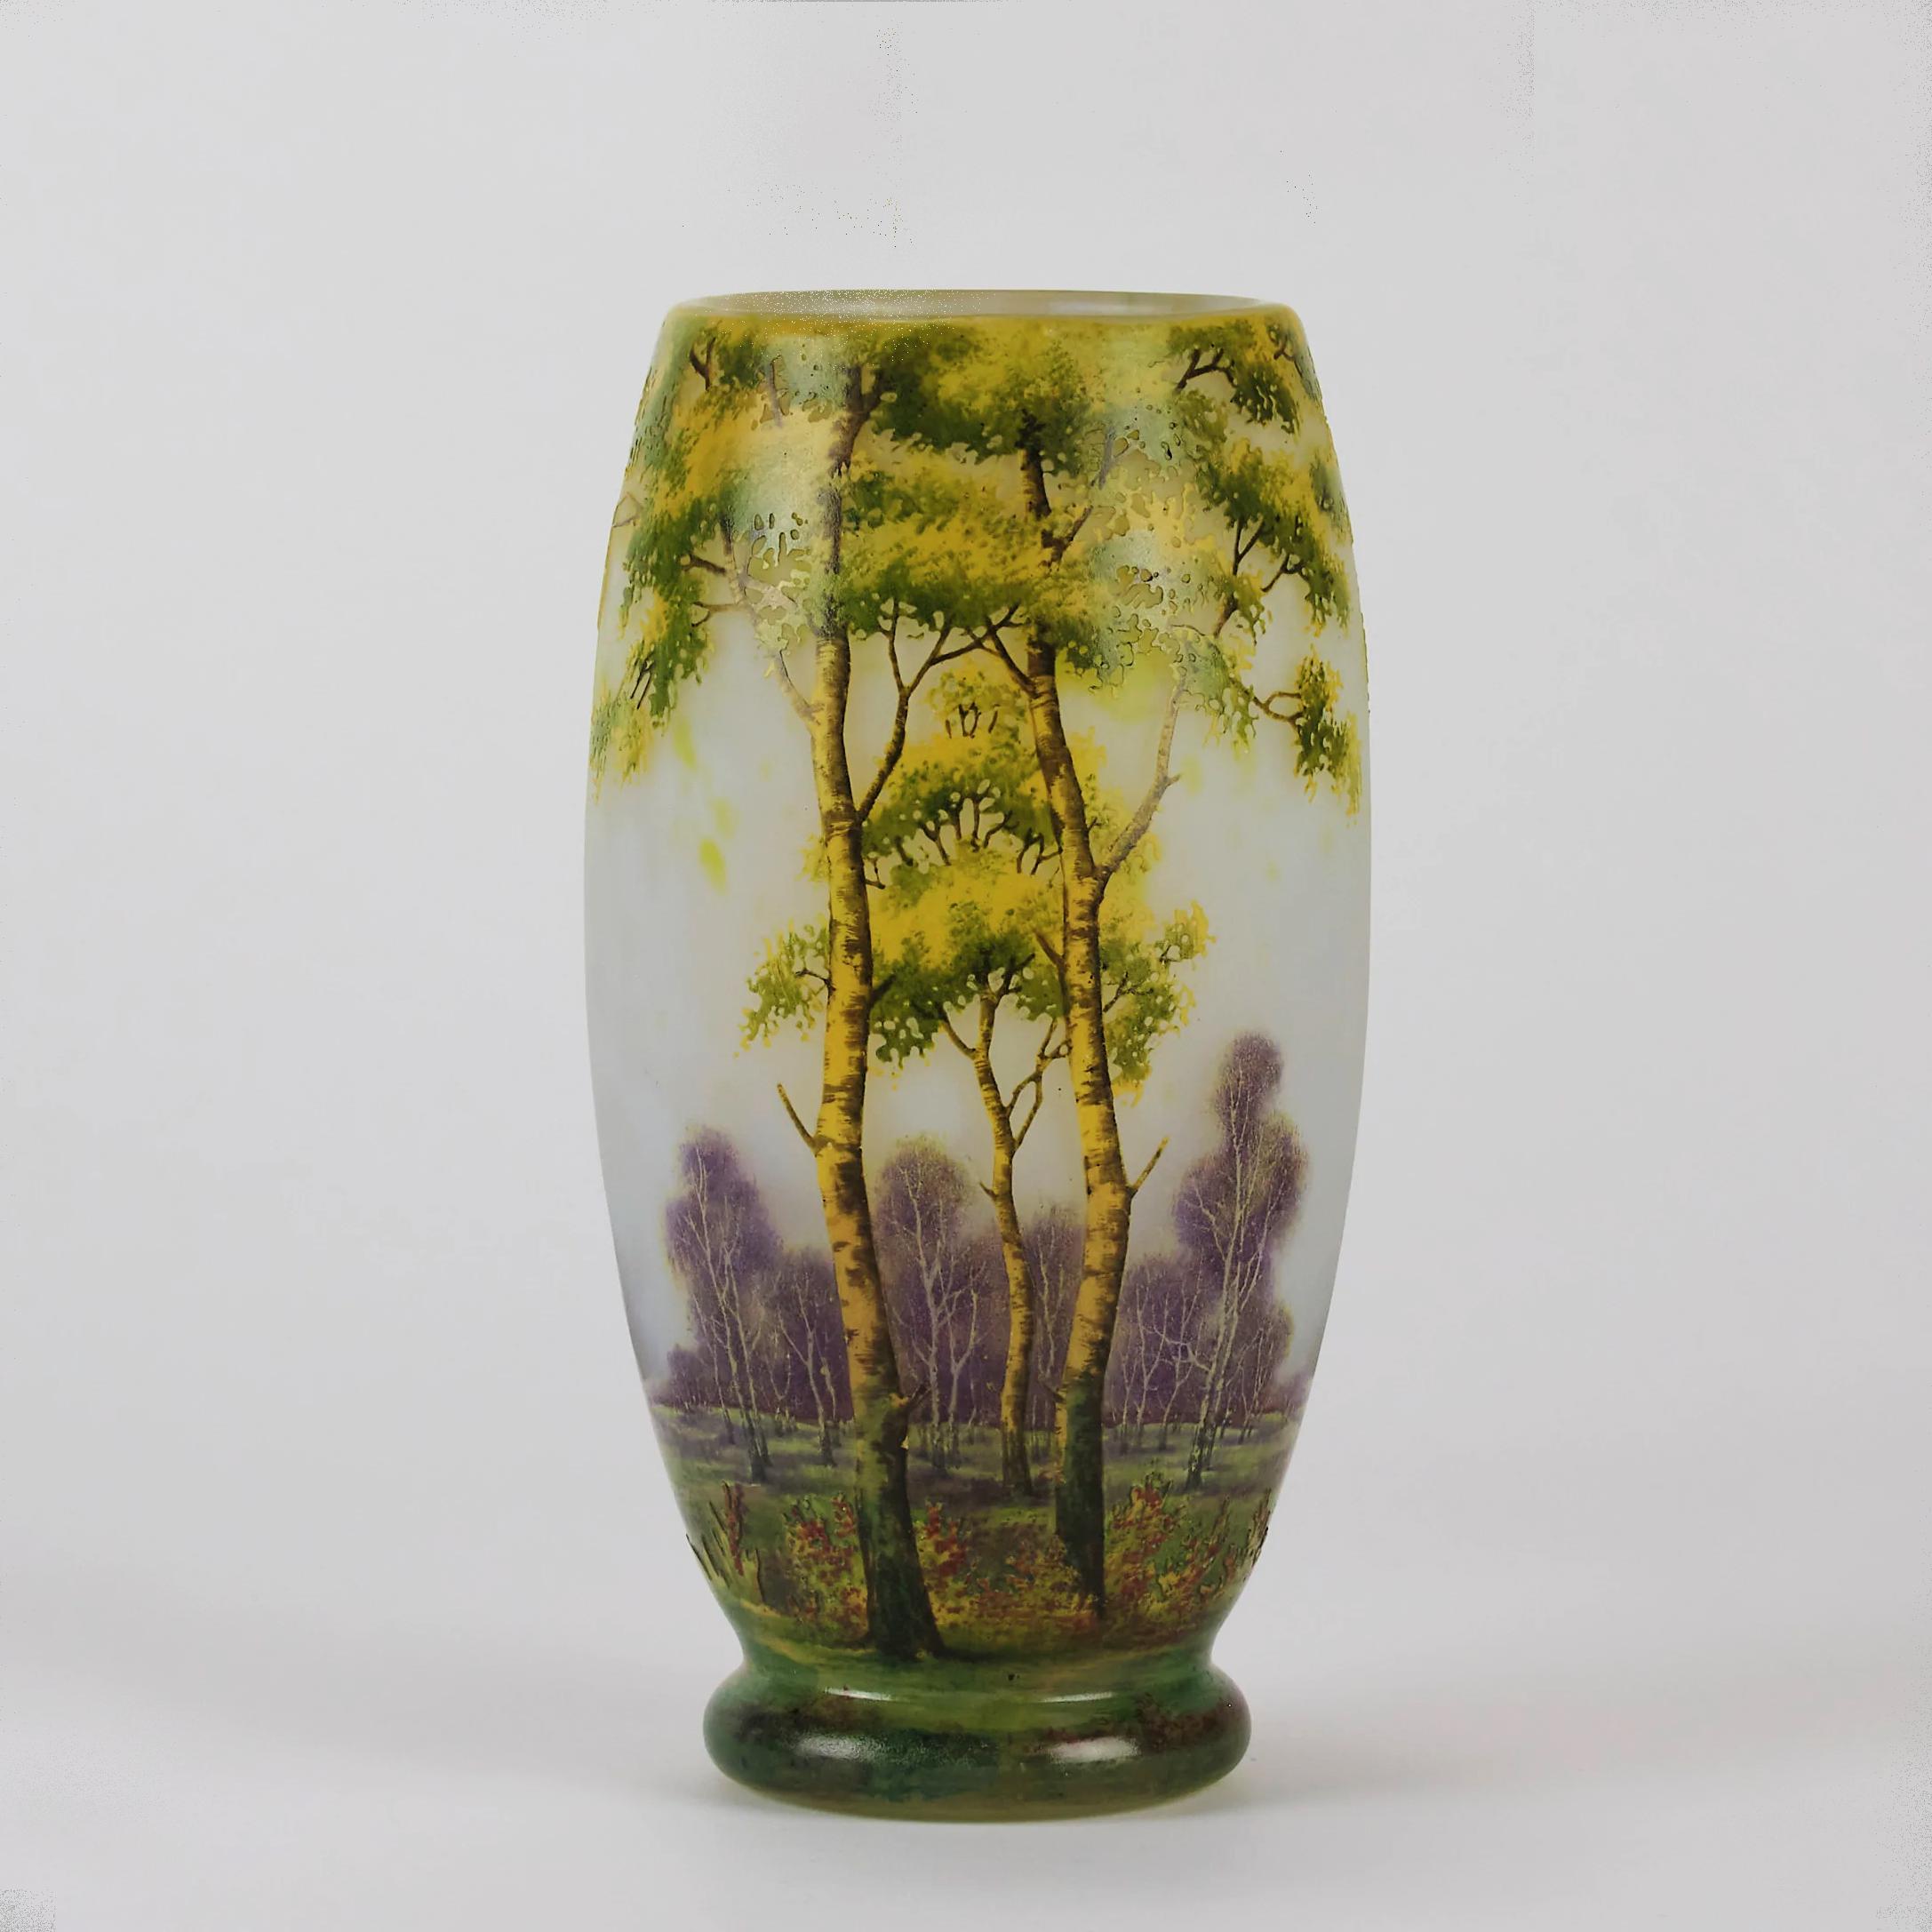 Un étonnant vase en verre camée Art Nouveau gravé et émaillé d'un paysage d'été riche et profond incorporant des arbres vibrants dans un paysage boisé, présentant d'excellentes couleurs et détails, signé Daum Nancy avec la Croix de